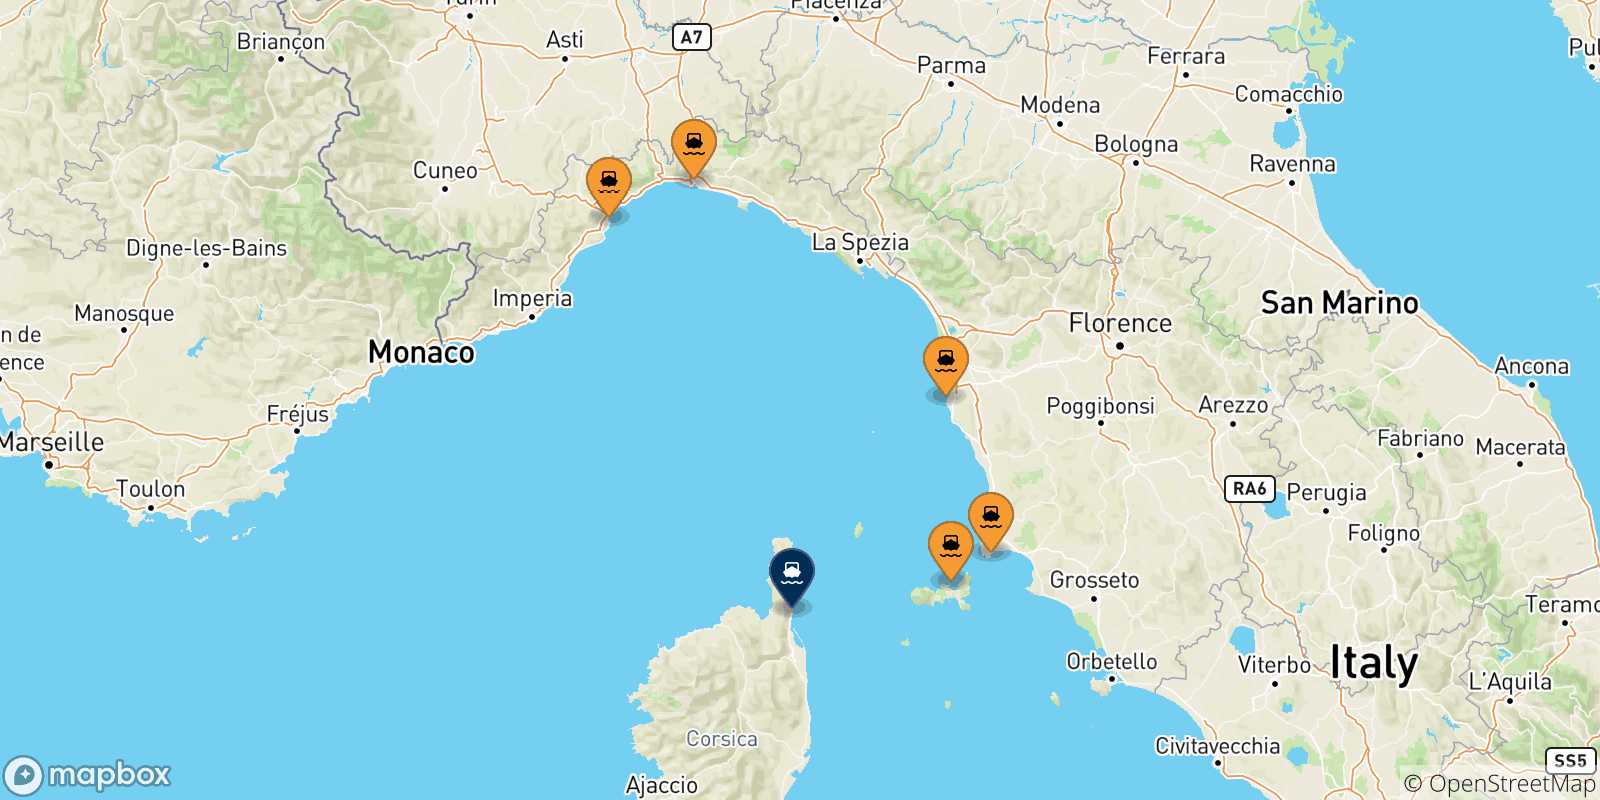 Mappa delle possibili rotte tra l'Italia e Bastia